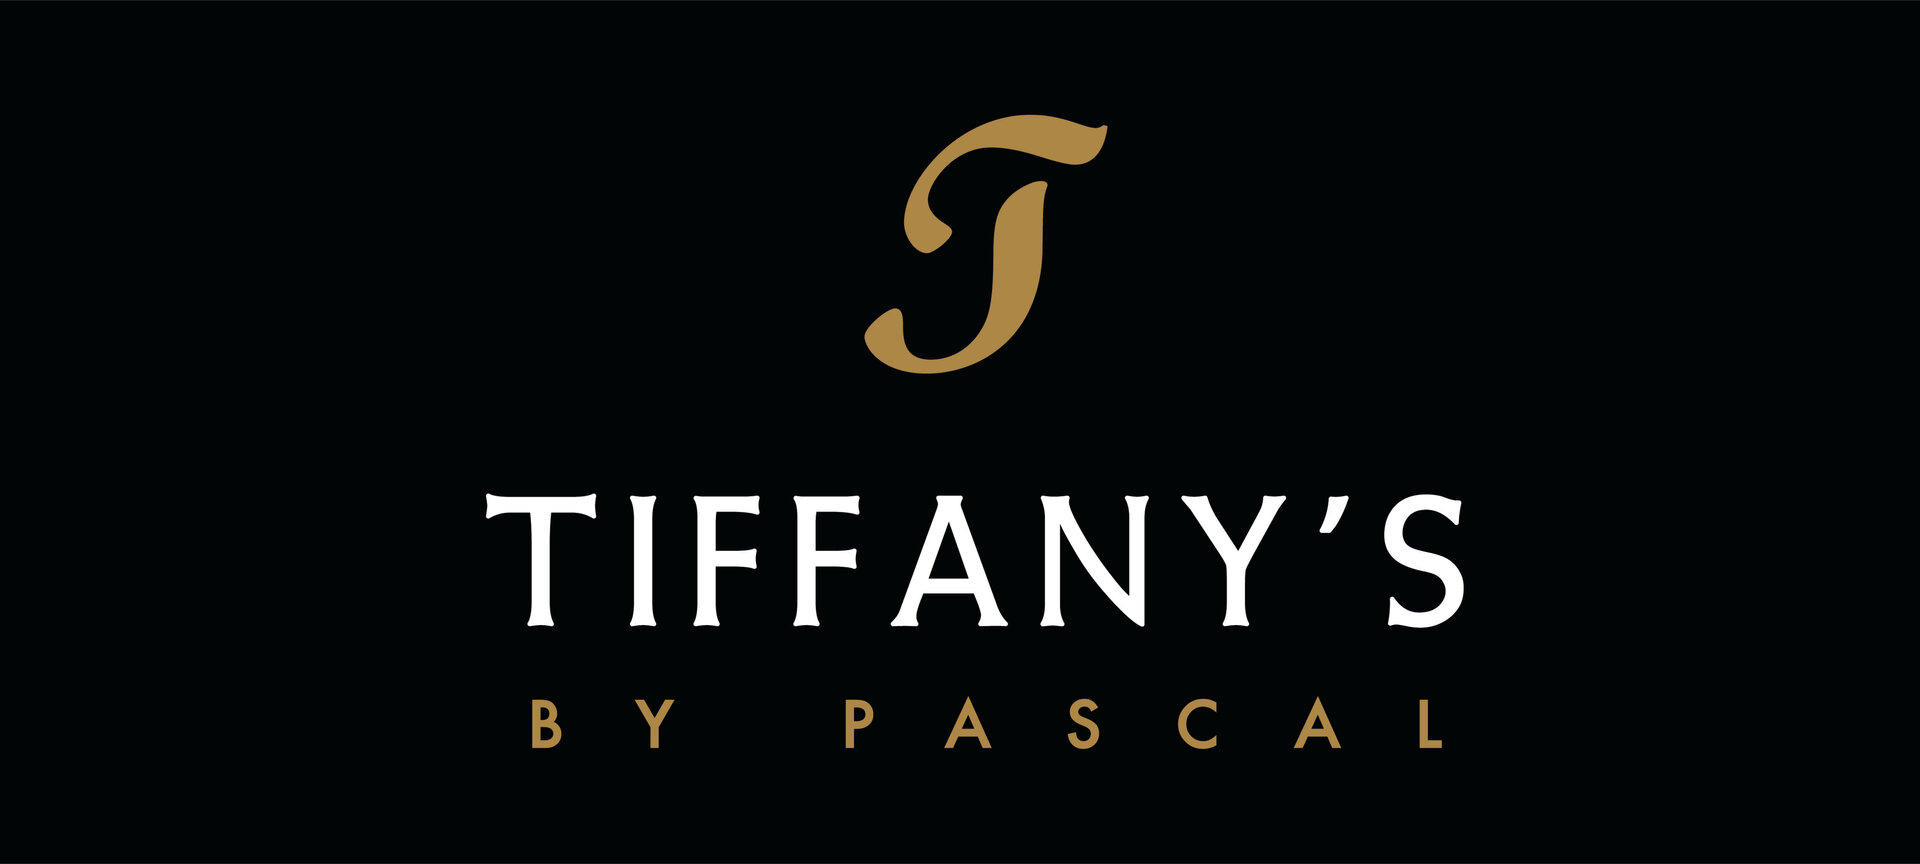 Tiffany's by Pascal - logo1